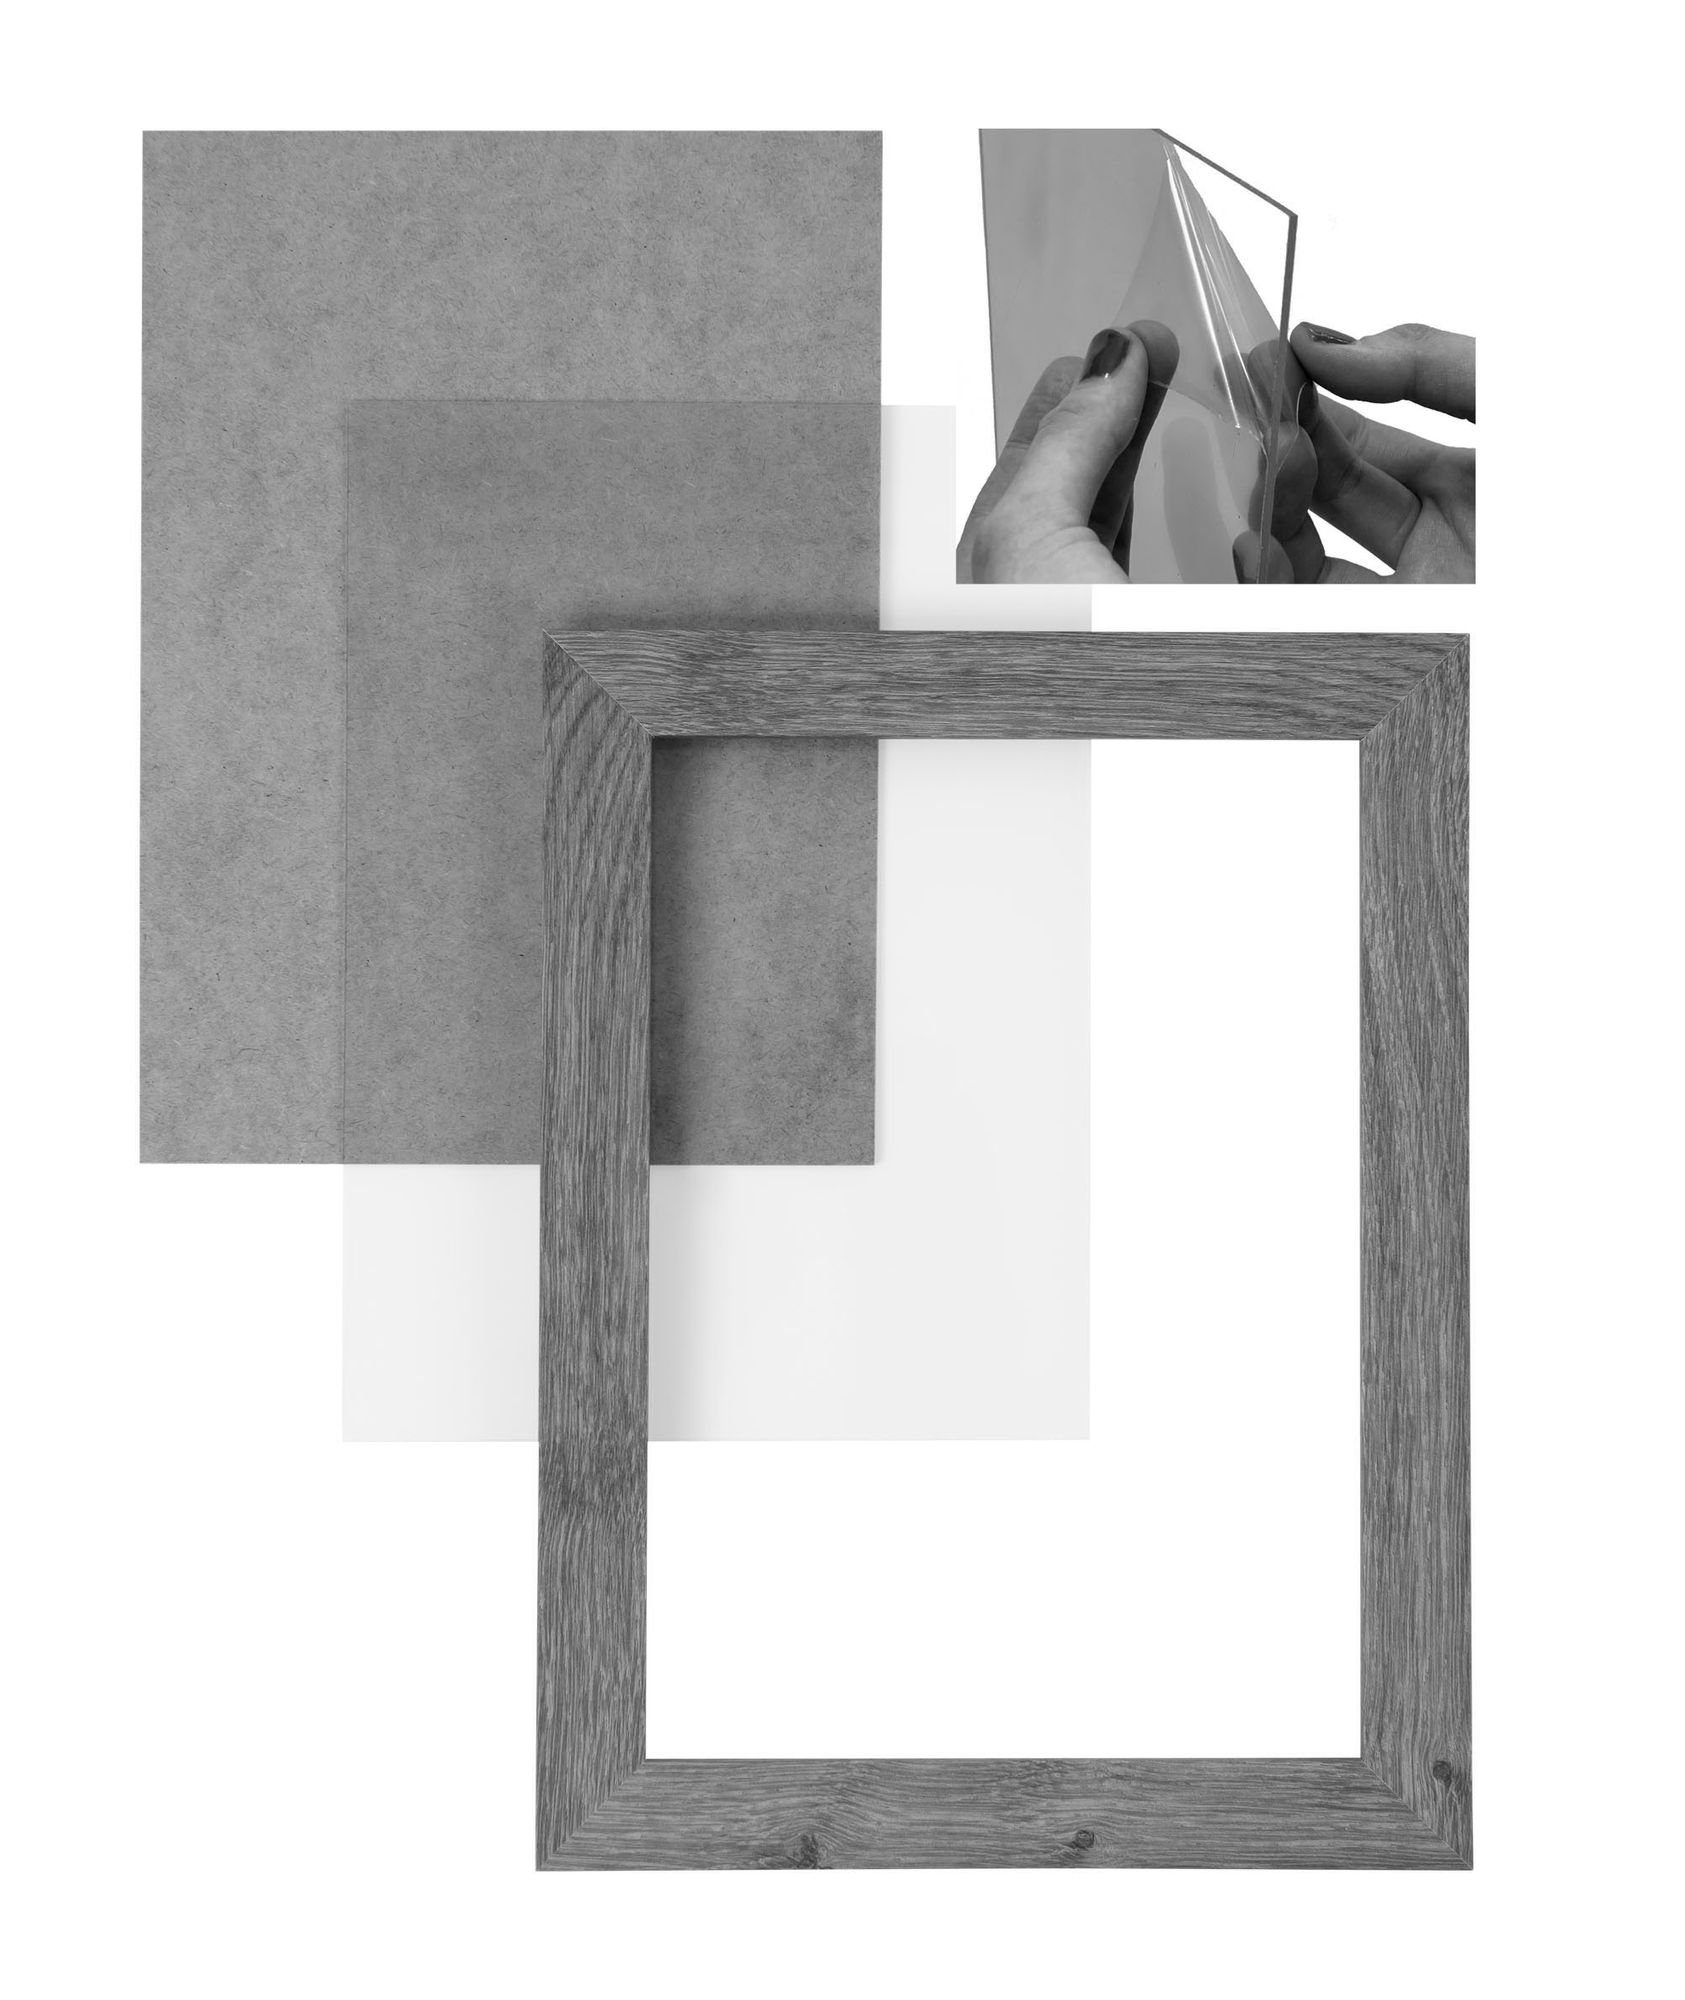 und inkl. CLAMARO weiss MDF Rahmen in Moderner Aufhänger Bilderrahmen eckiger Acrylglas, nach handgefertigt Maß Holz 80x120 FSC® Clamaro 'Collage' vintage Bilderrahmen Rückwand